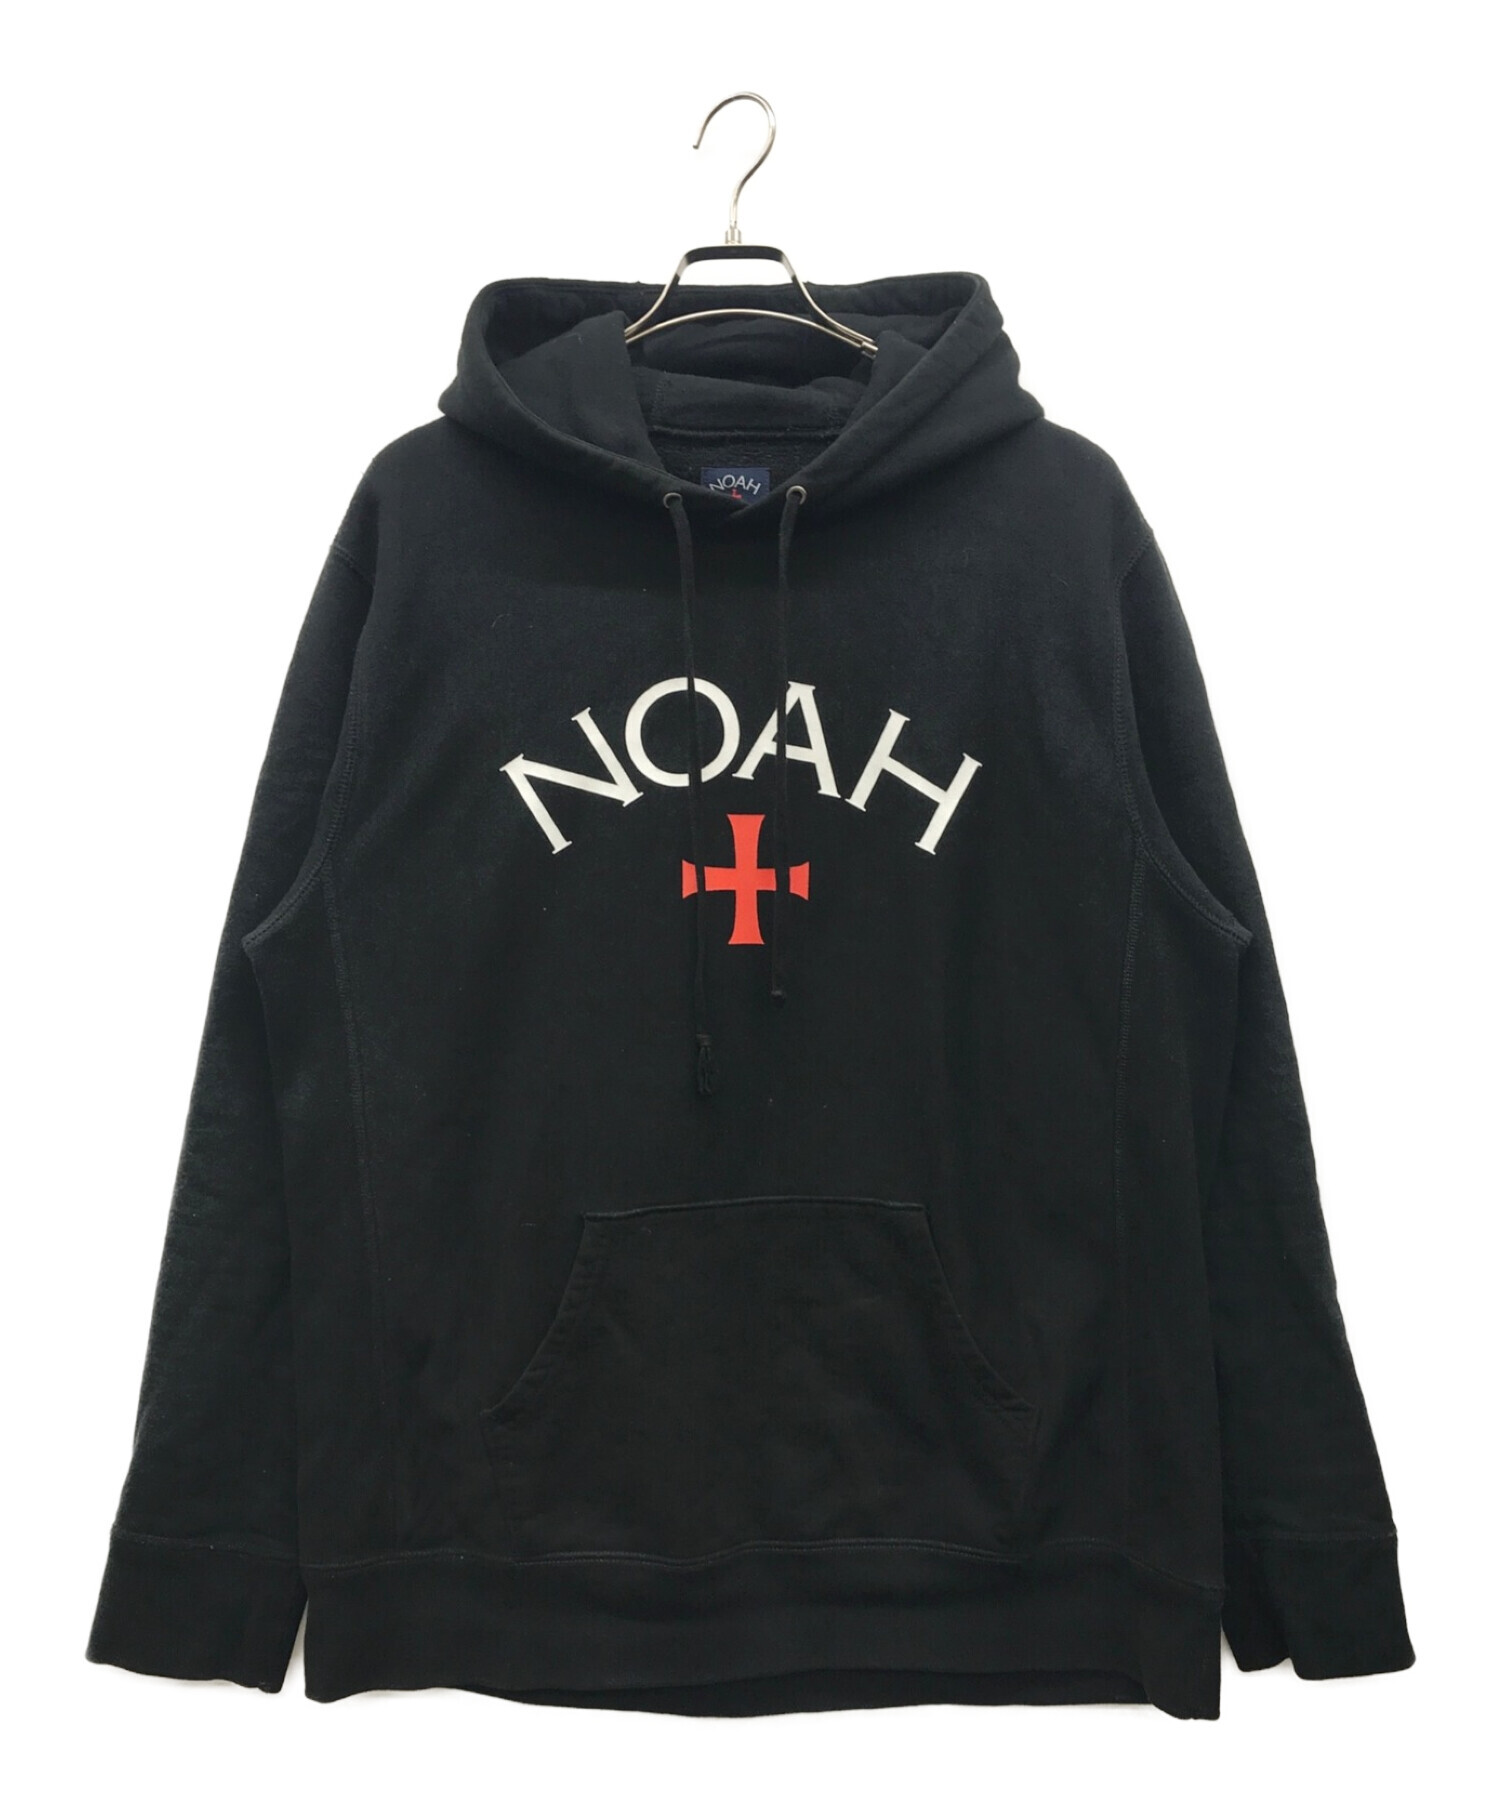 NOAH NYC CORE LOGO HOODIE XL